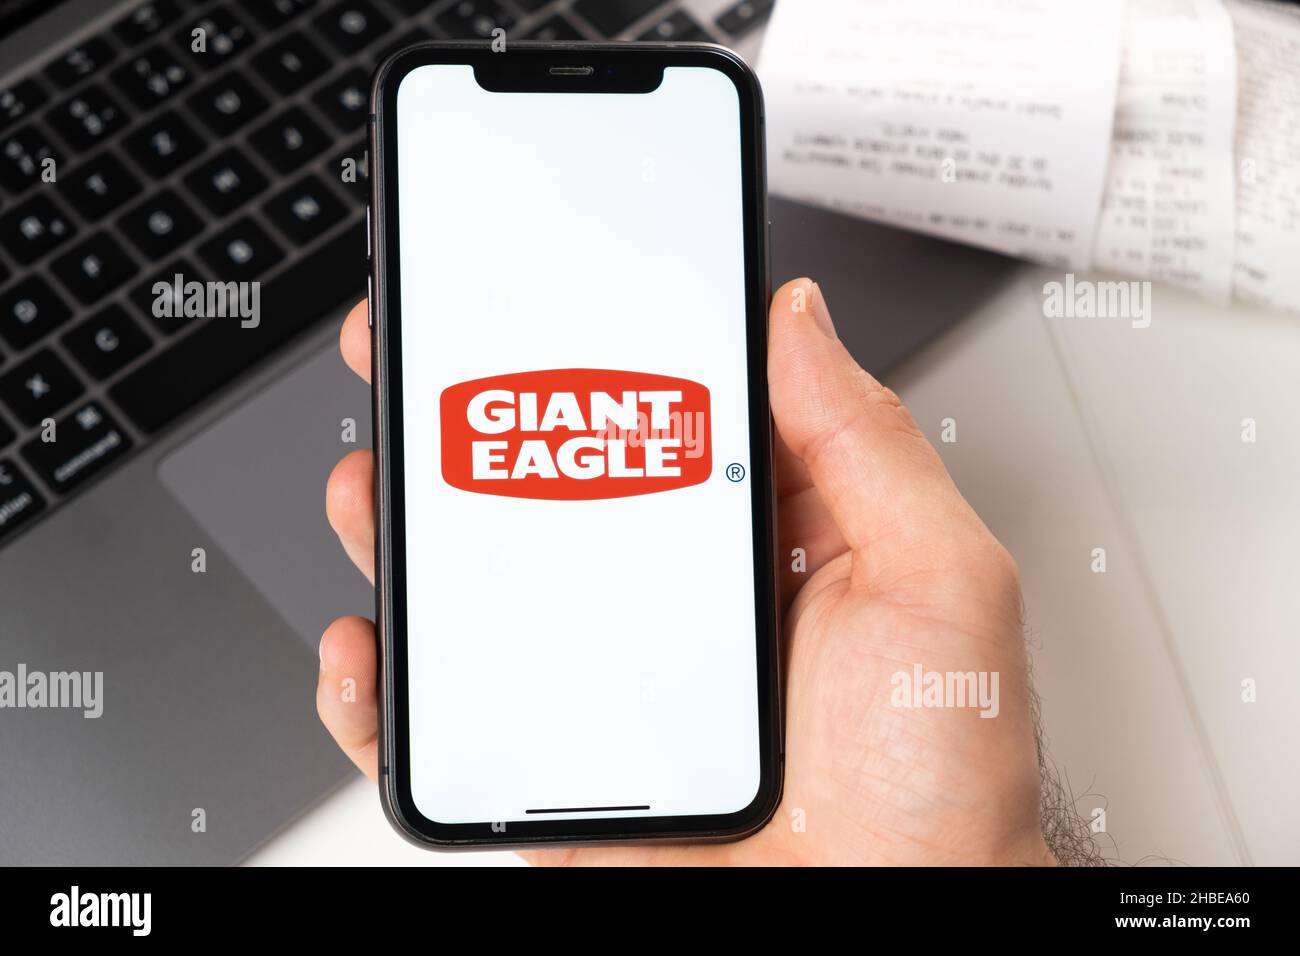 Application Giant Eagle d'un supermarché et d'une épicerie dans un smartphone.Un homme tient un smartphone avec une application pour faire du shopping et un ordinateur portable en arrière-plan.Novembre 2021, San Francisco, États-Unis Banque D'Images